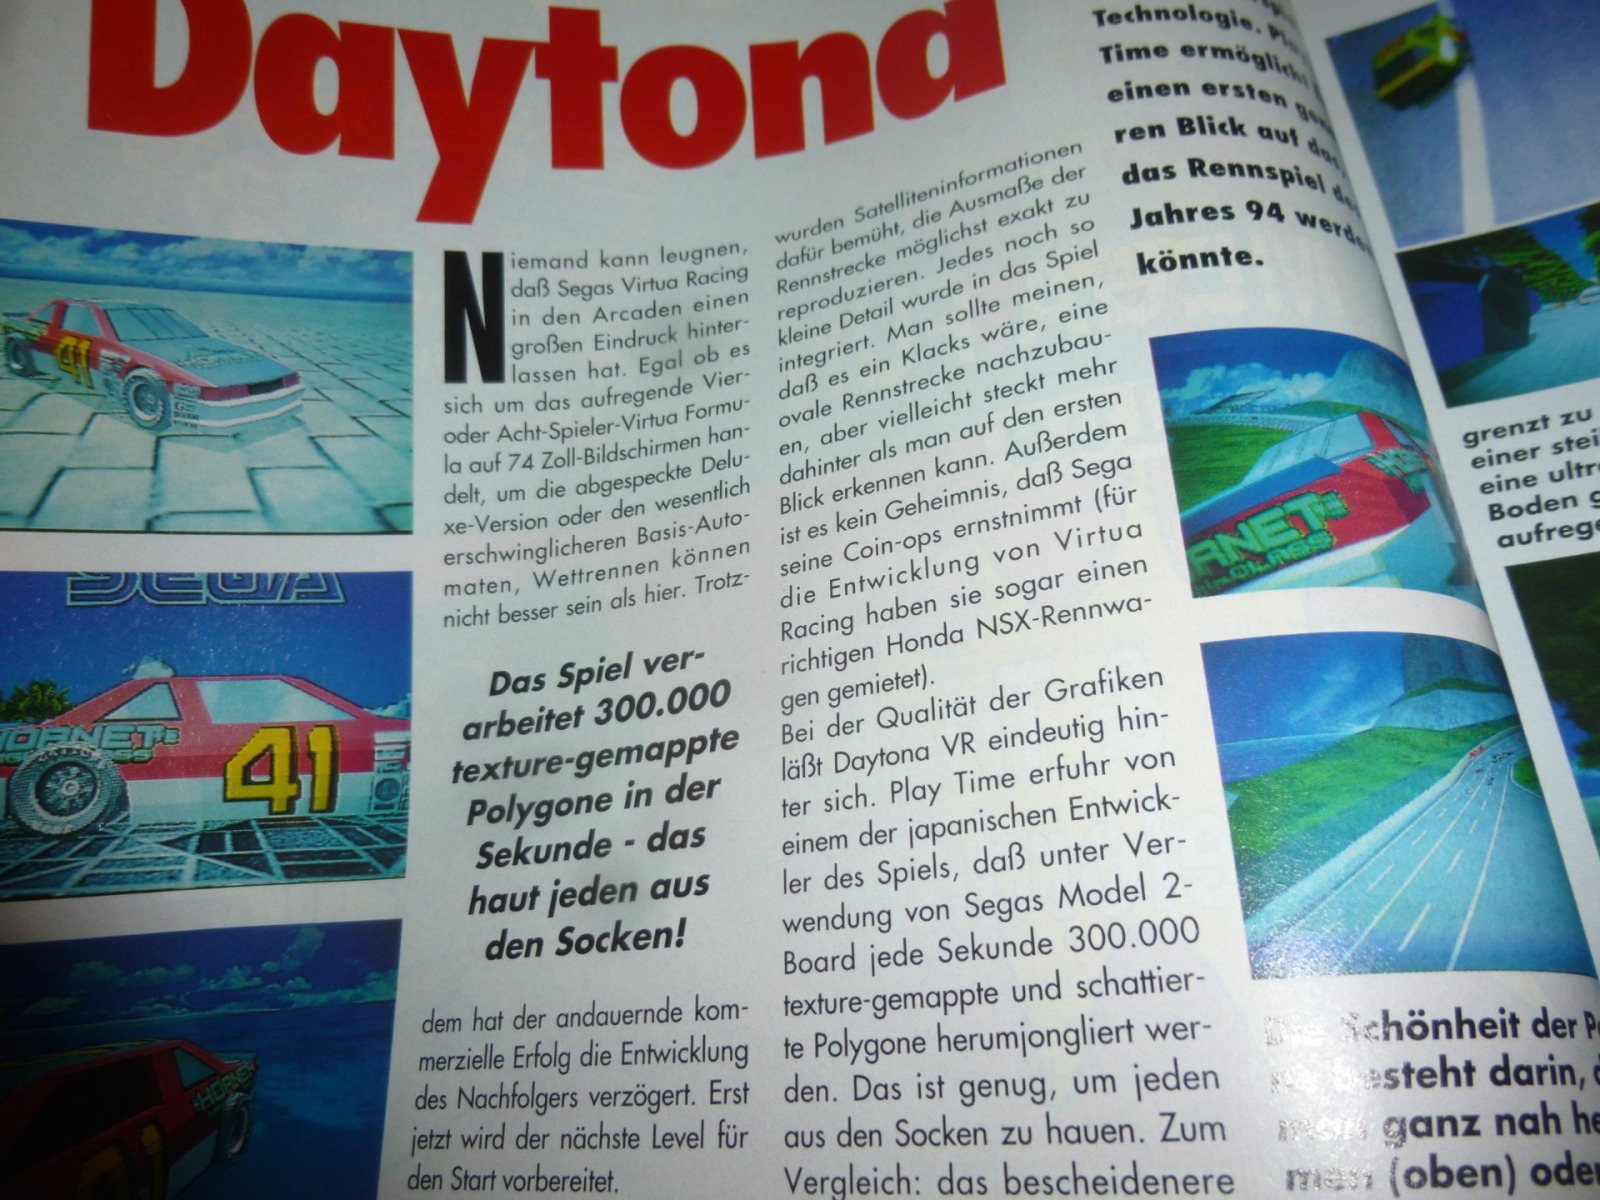 Play Time - Das Computer- und Videospiele-Magazin - Ausgabe 5/94 1994 7